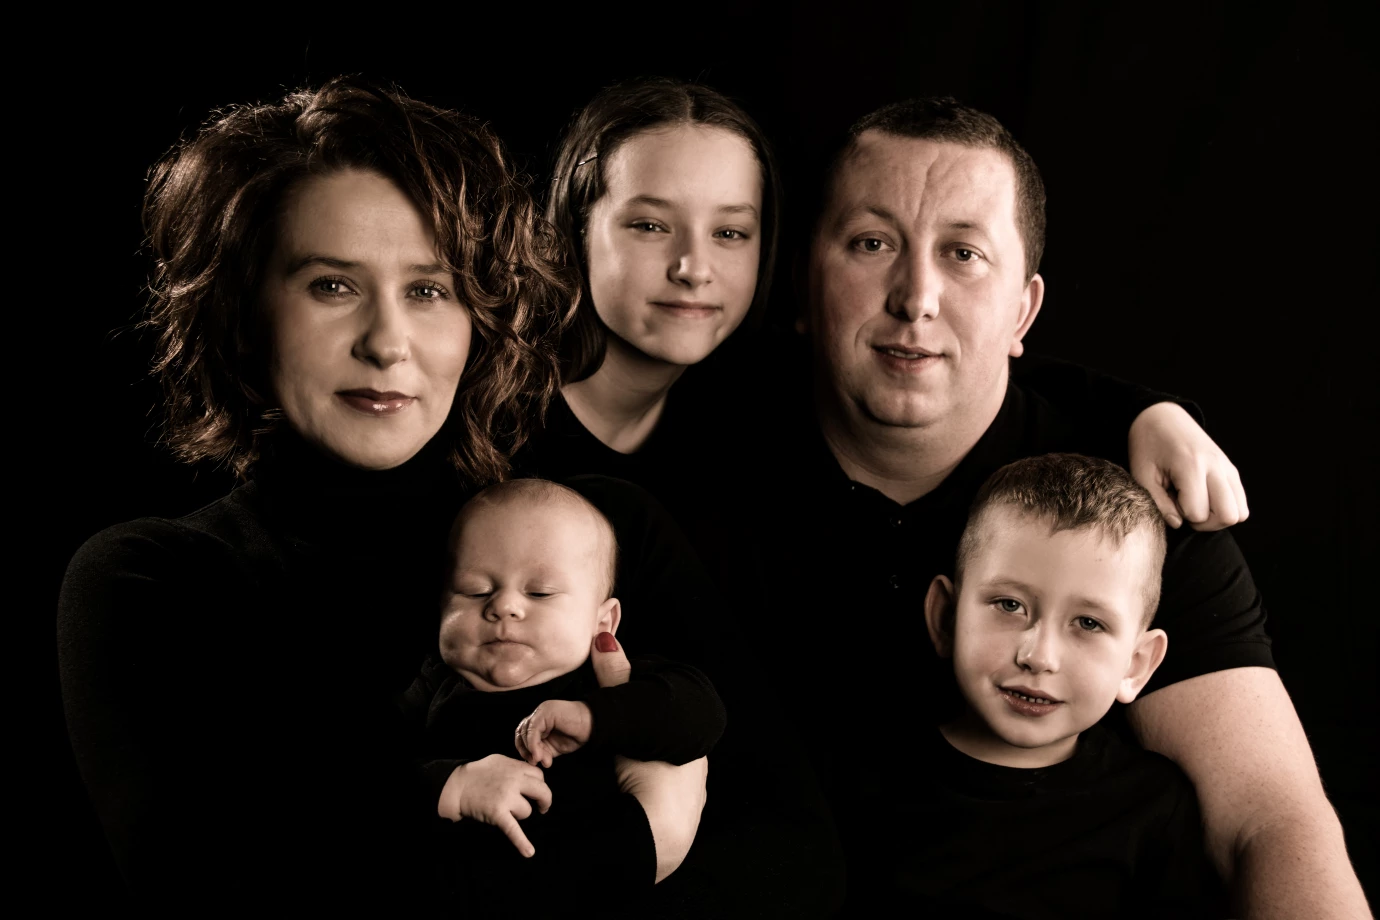 fotograf kielce a-ha-studio portfolio zdjecia rodzinne fotografia rodzinna sesja